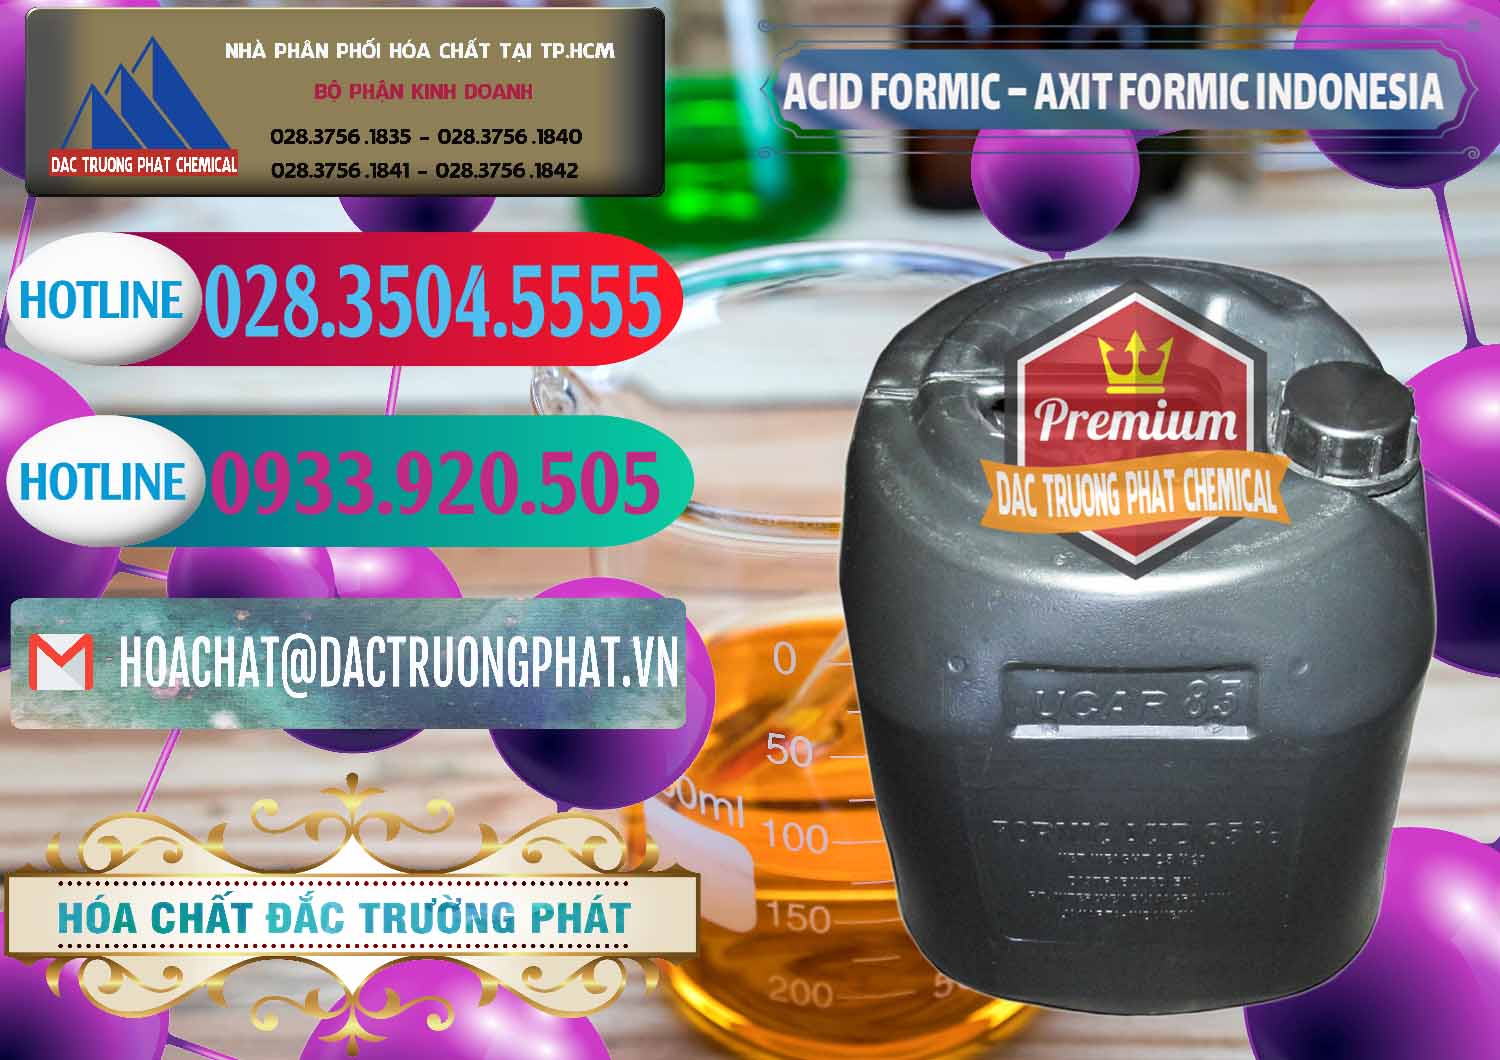 Nơi chuyên cung ứng - bán Acid Formic - Axit Formic Indonesia - 0026 - Phân phối và bán hóa chất tại TP.HCM - truongphat.vn